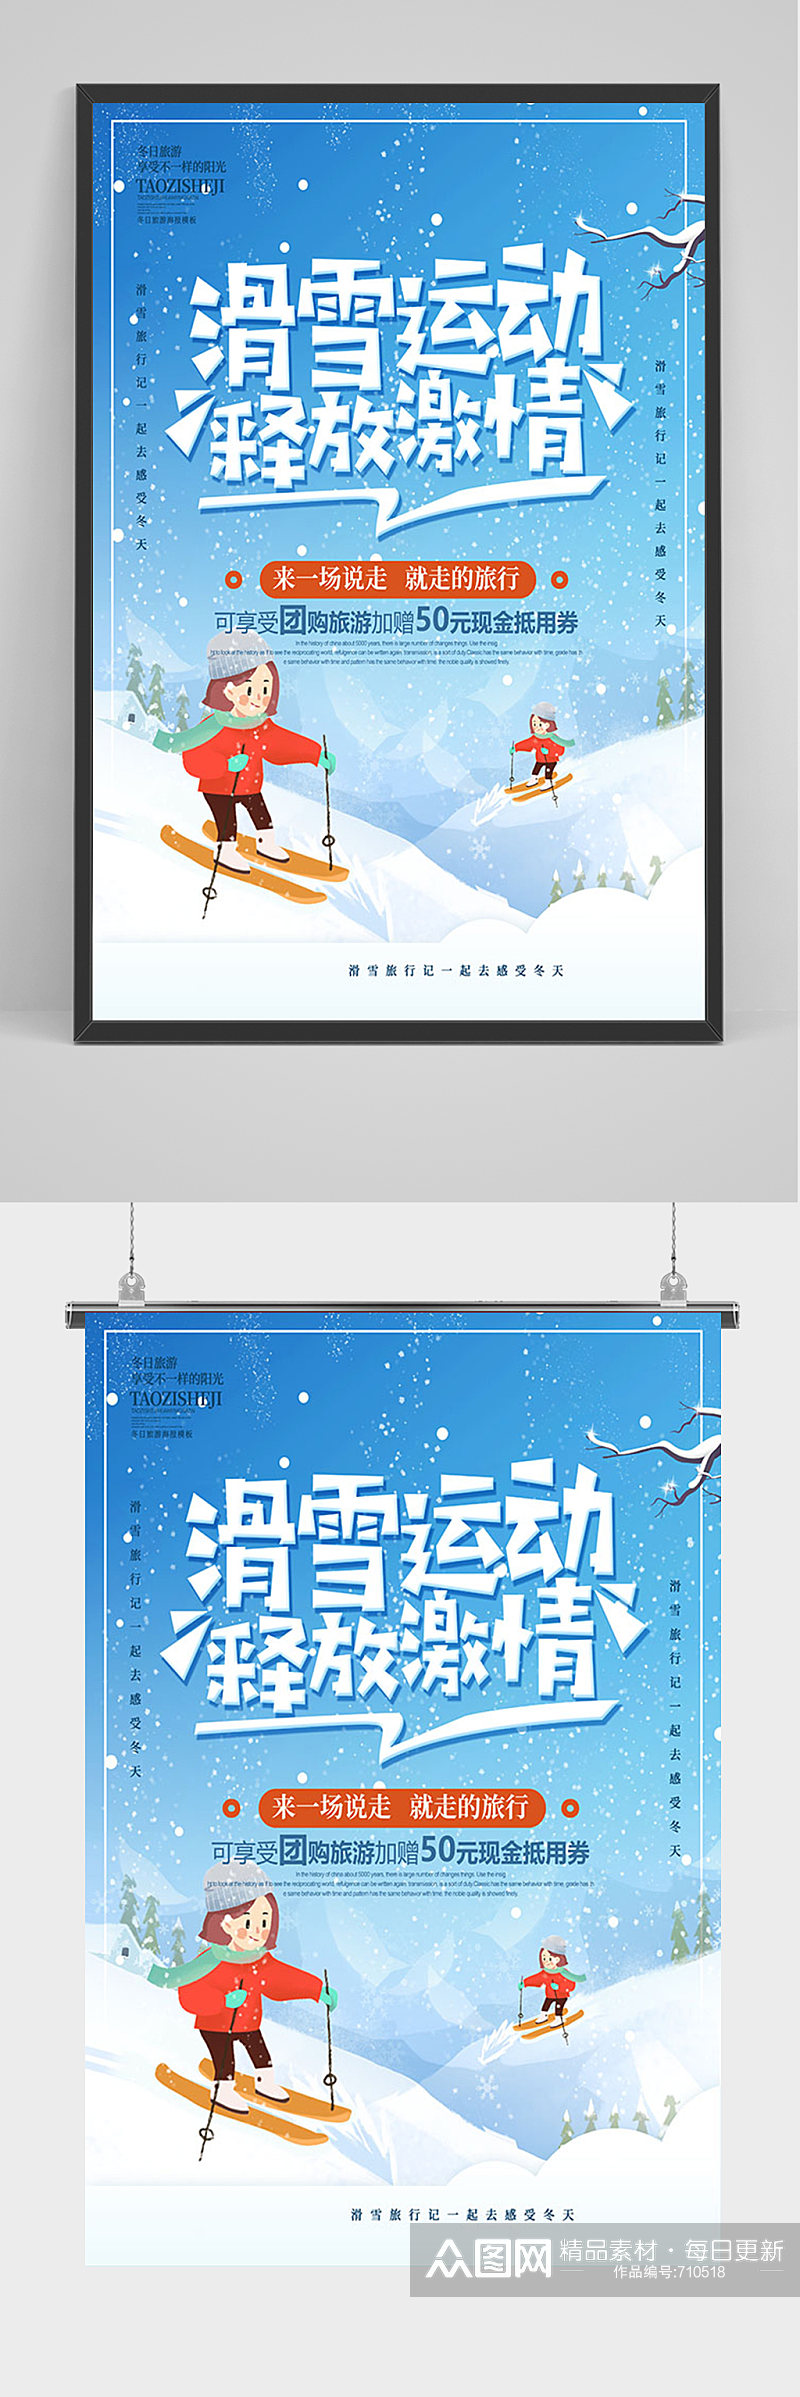 蓝色手绘滑雪运动海报素材